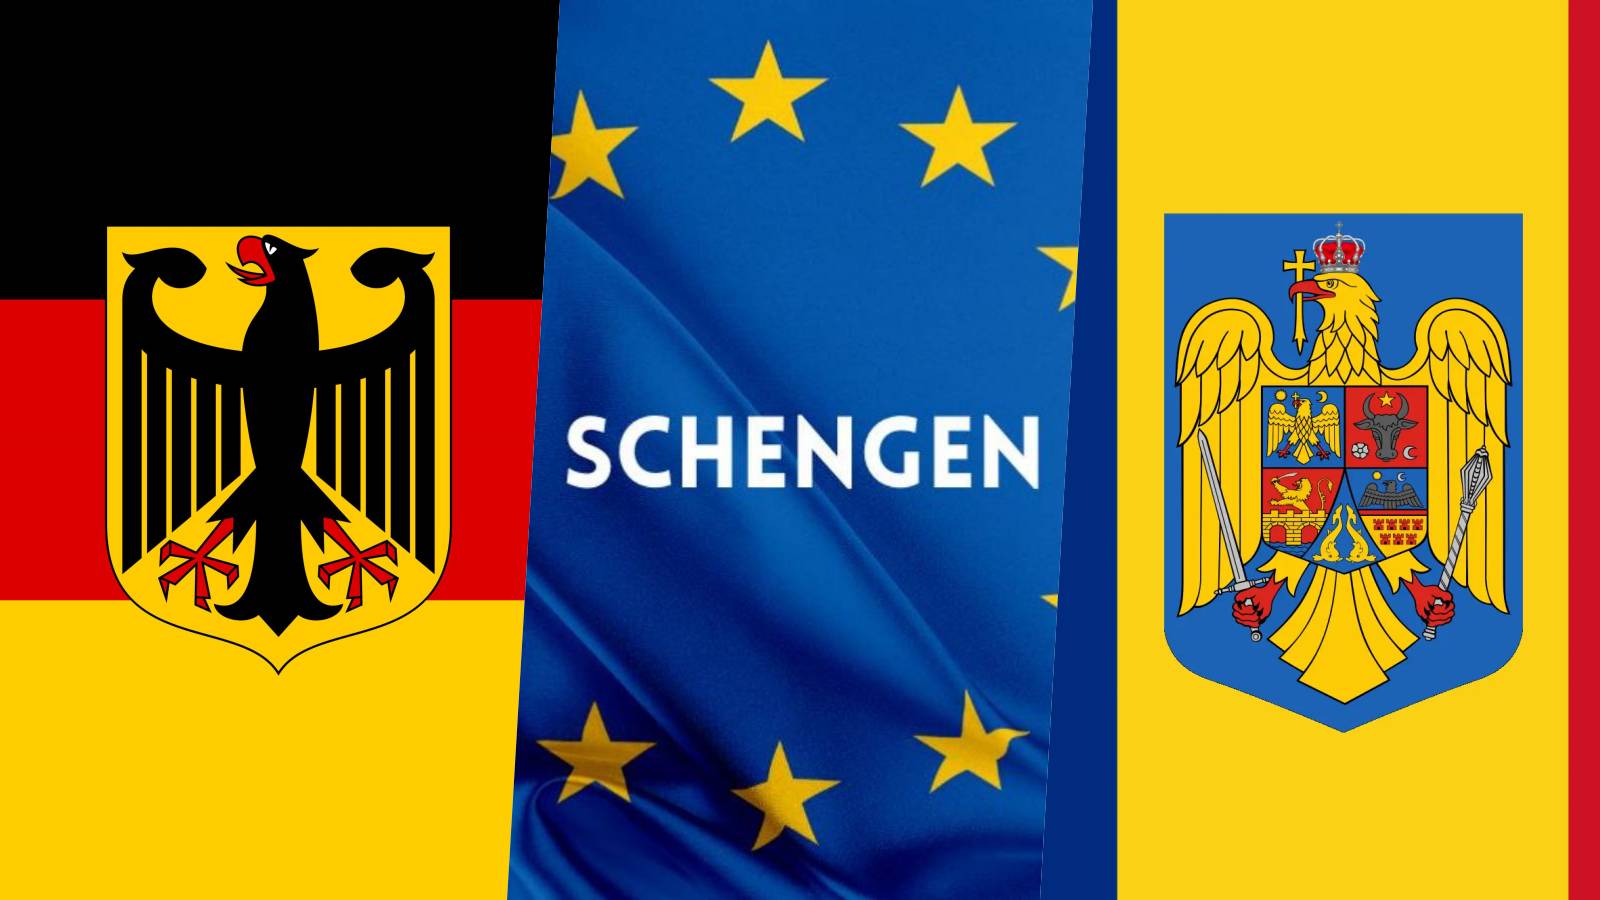 Masurile Germaniei Oficiale ULTIM MOMENT Berlinul Actioneaza Impotriva Eforturilor Aderare Romaniei Schengen